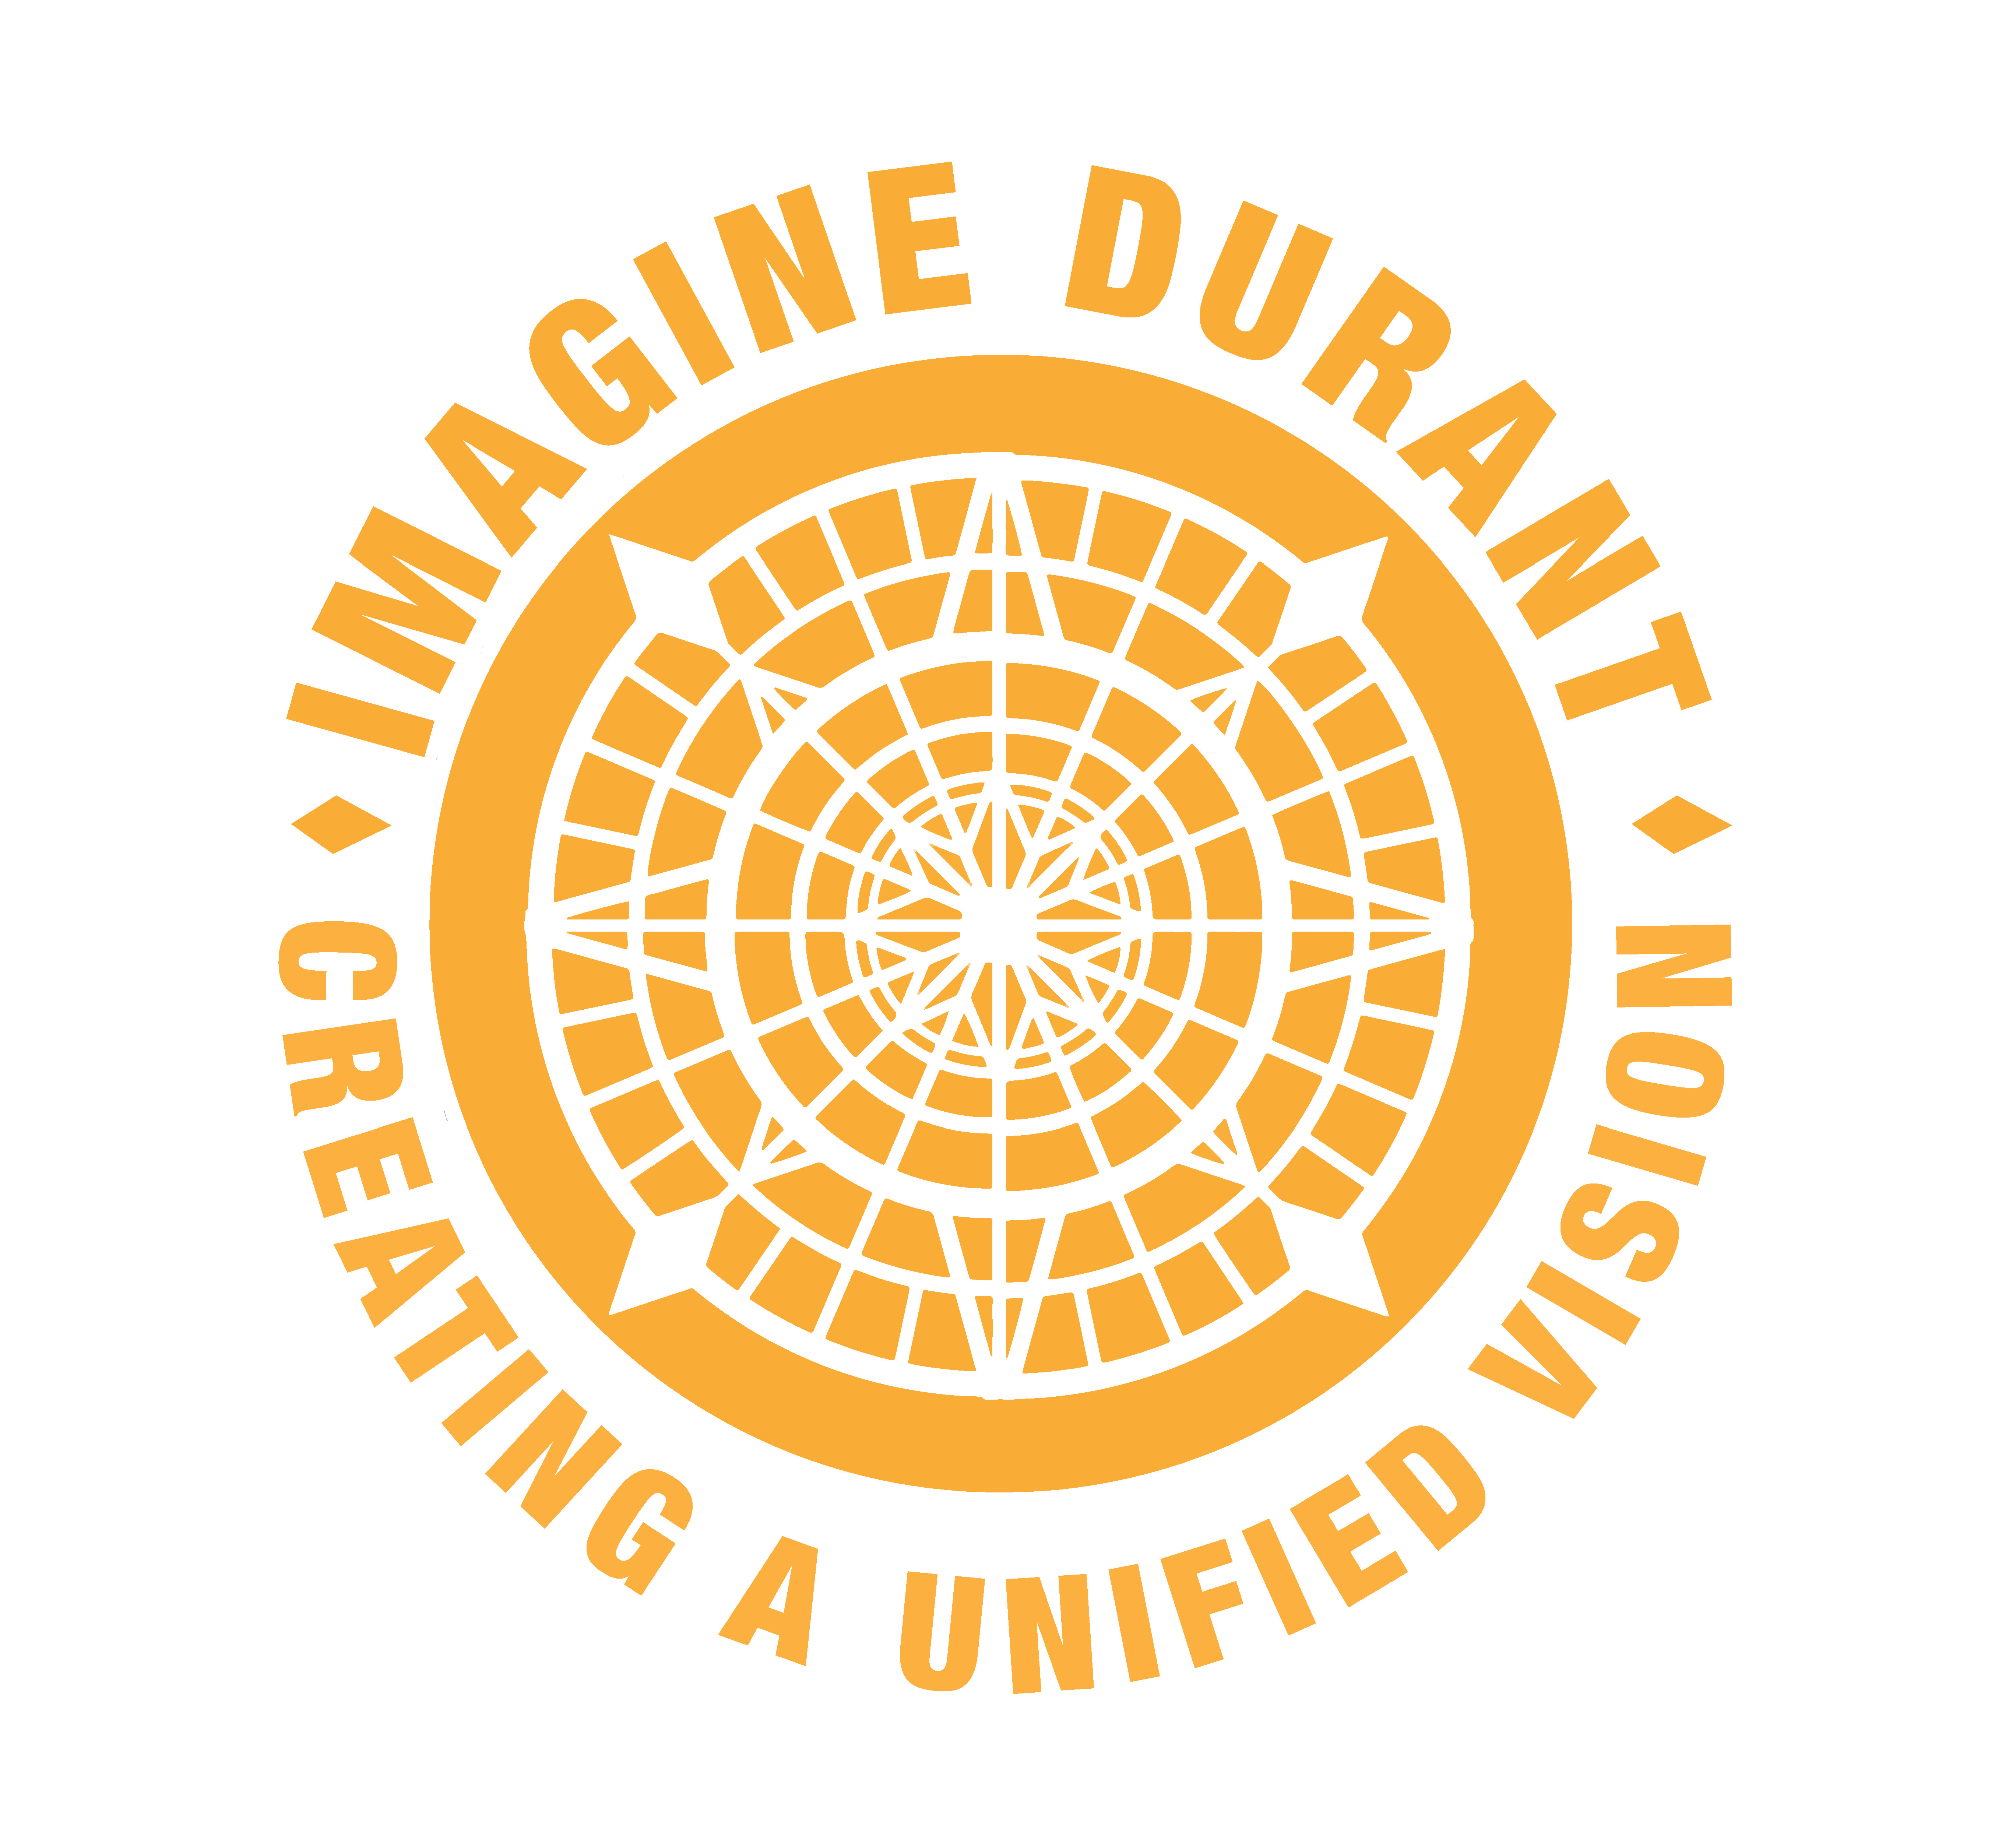 Imagine Durant diamond logo